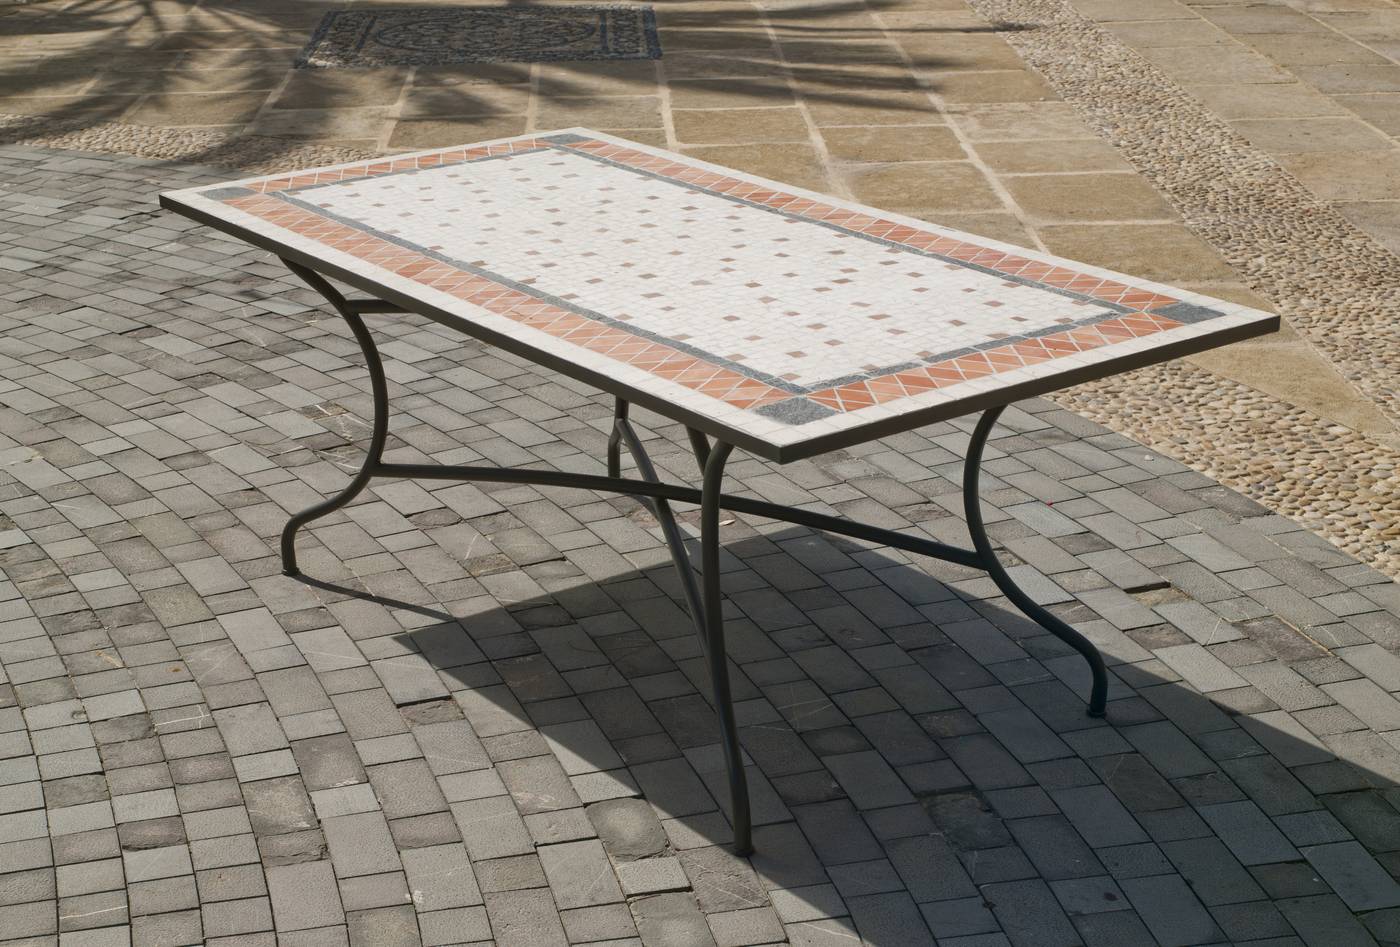 Conjunto Mosaico Roland-Bergamo 150-6 - Conjunto para terraza o jardín de forja color bronce: 1 mesa con tablero mosaico + 6 sillones de ratán sintético + 6 cojines.